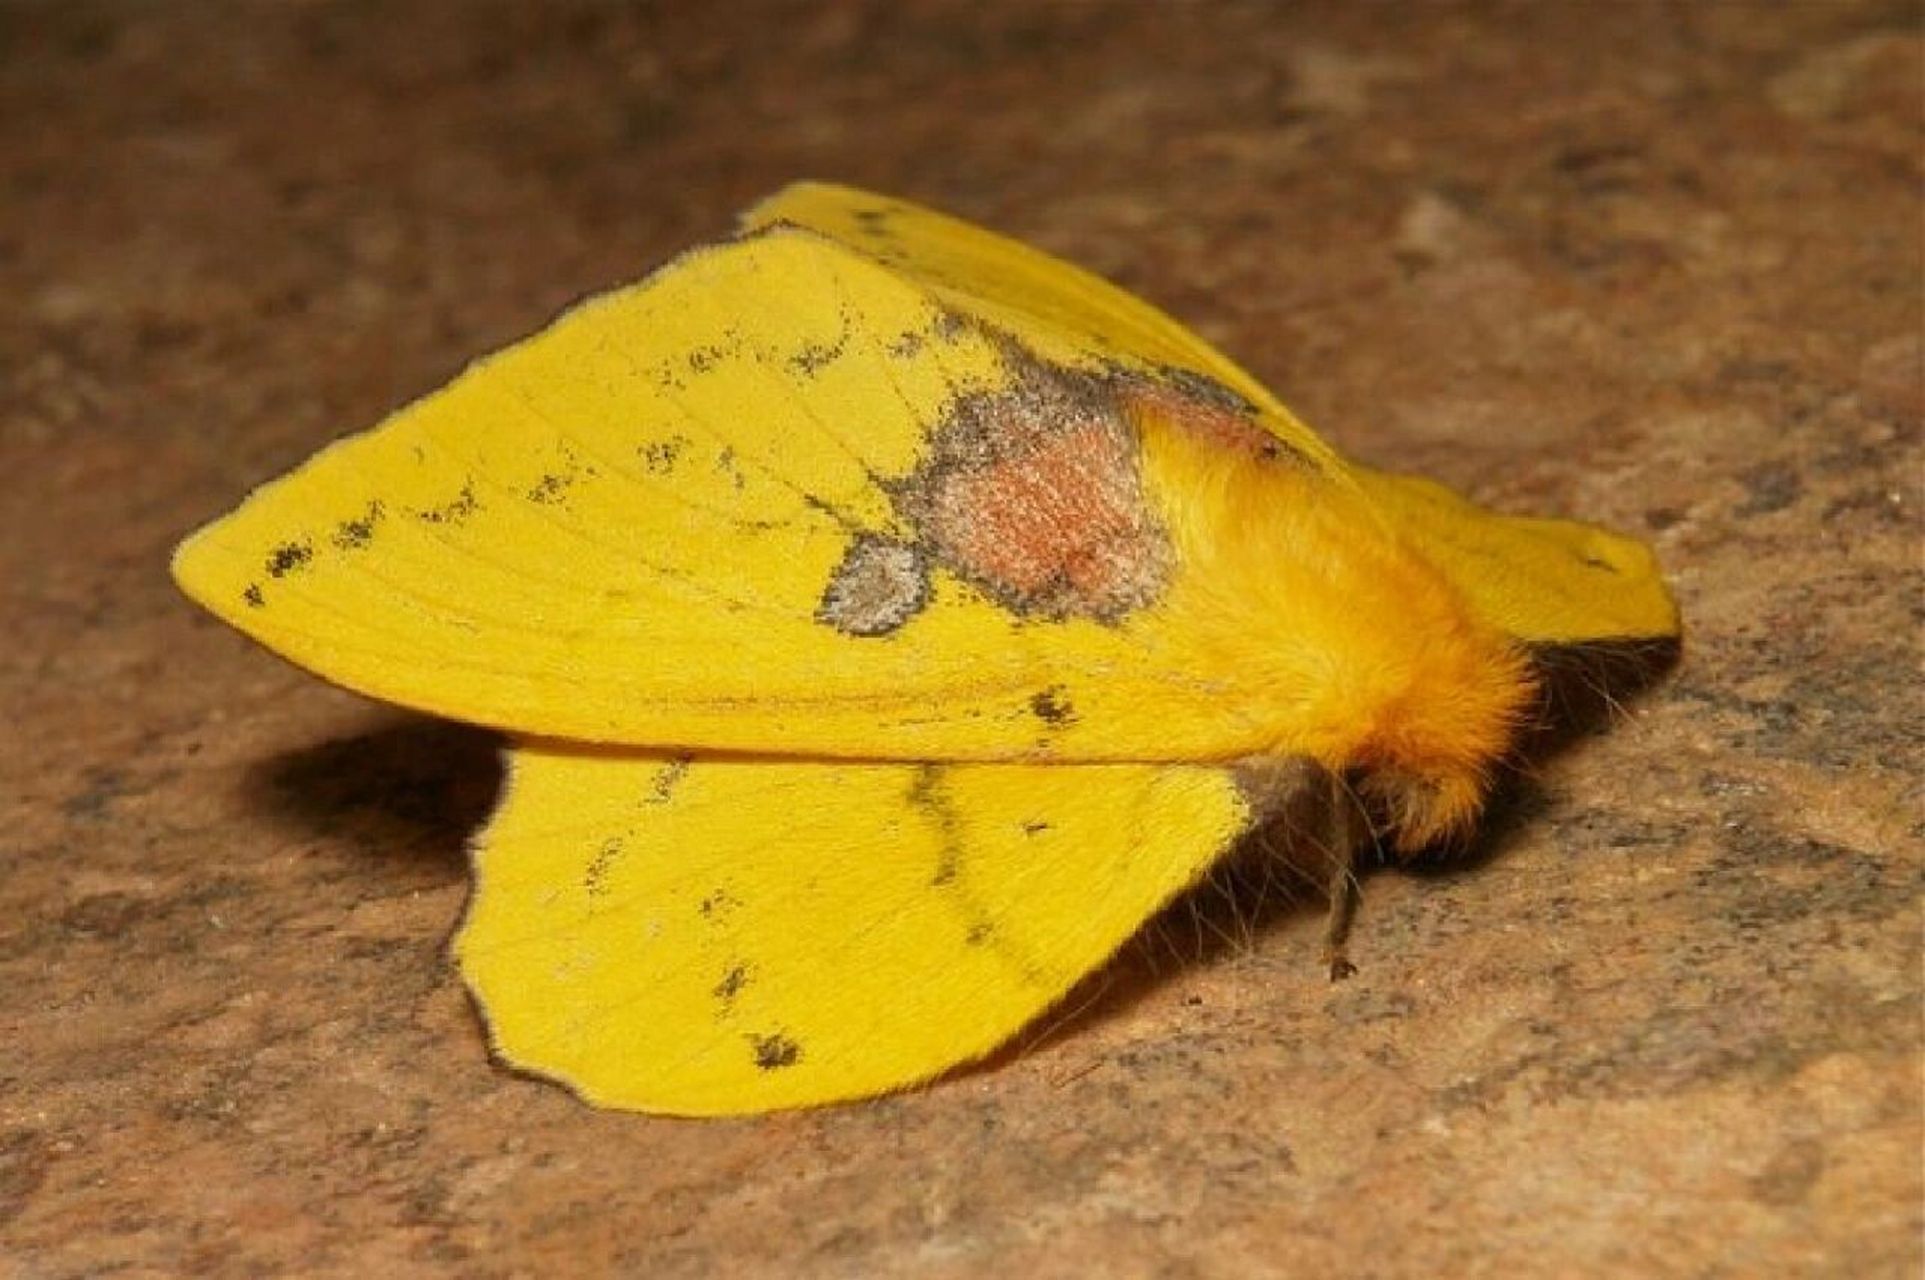 青黄枯叶蛾 trabala vishnou,枯叶蛾科分布在东亚,东南亚,南亚